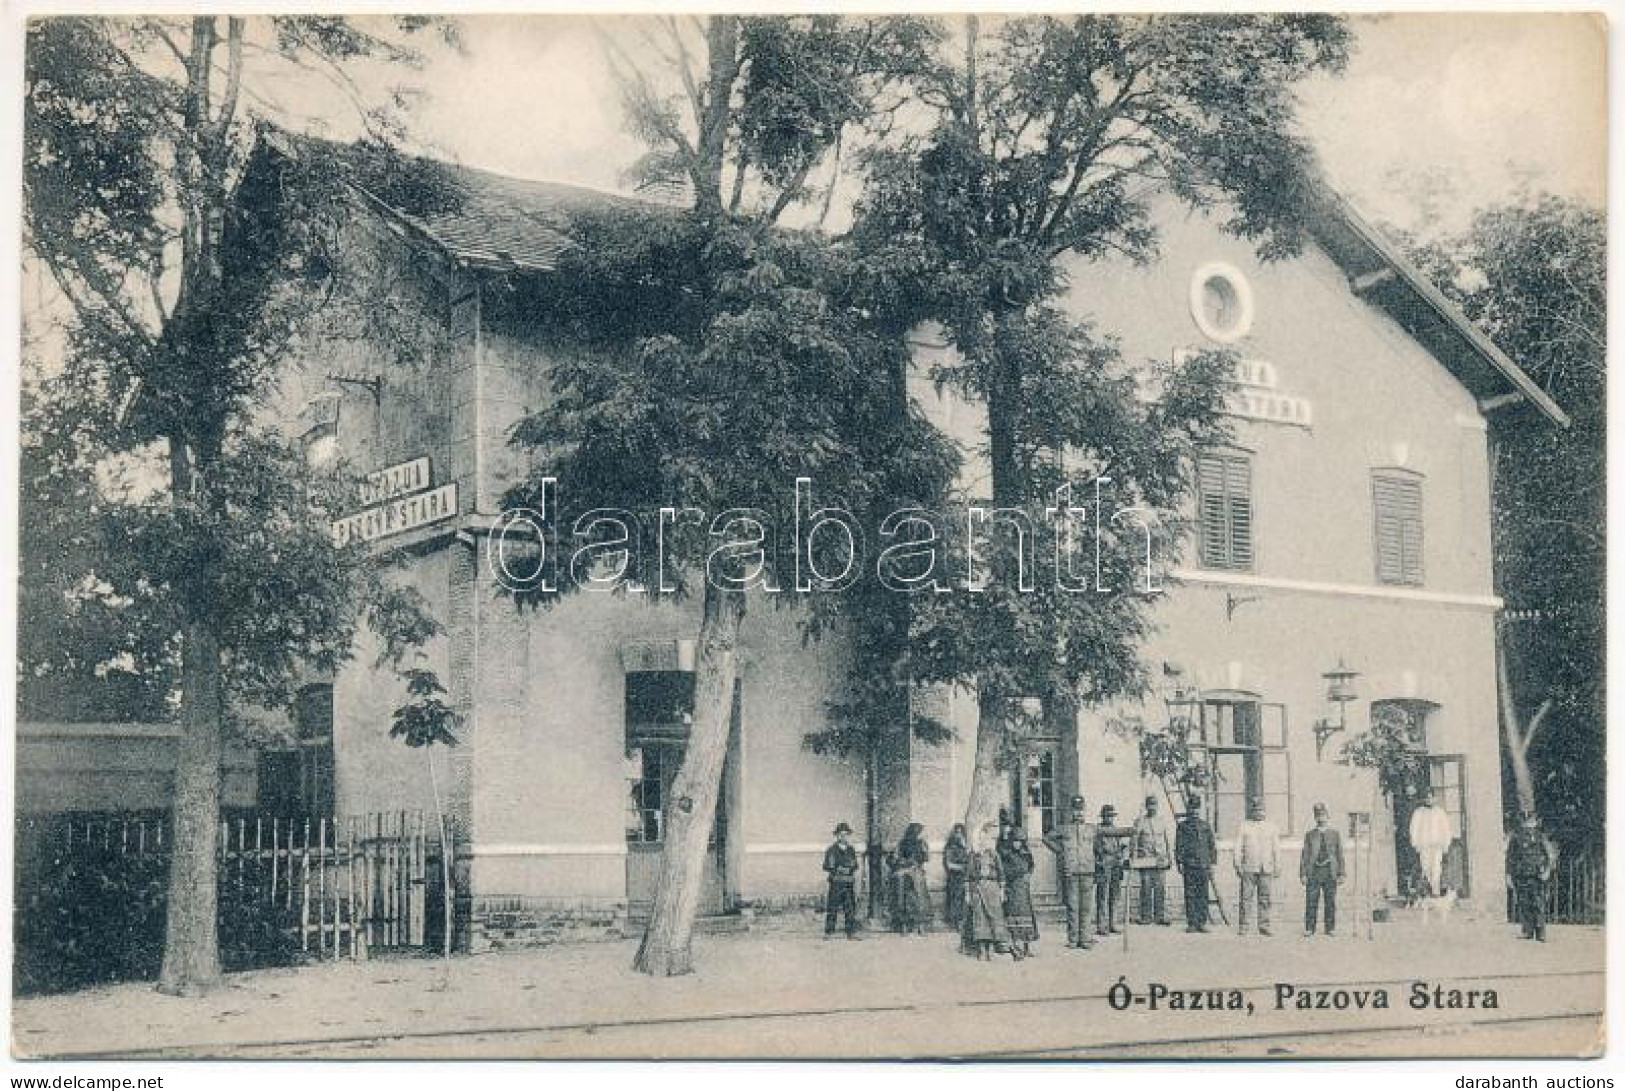 T2 1913 Ópazova, Ó-Pazna, Ó-Pazua, Alt Pazua, Stara Pazova; Vasútállomás / Railway Station - Unclassified